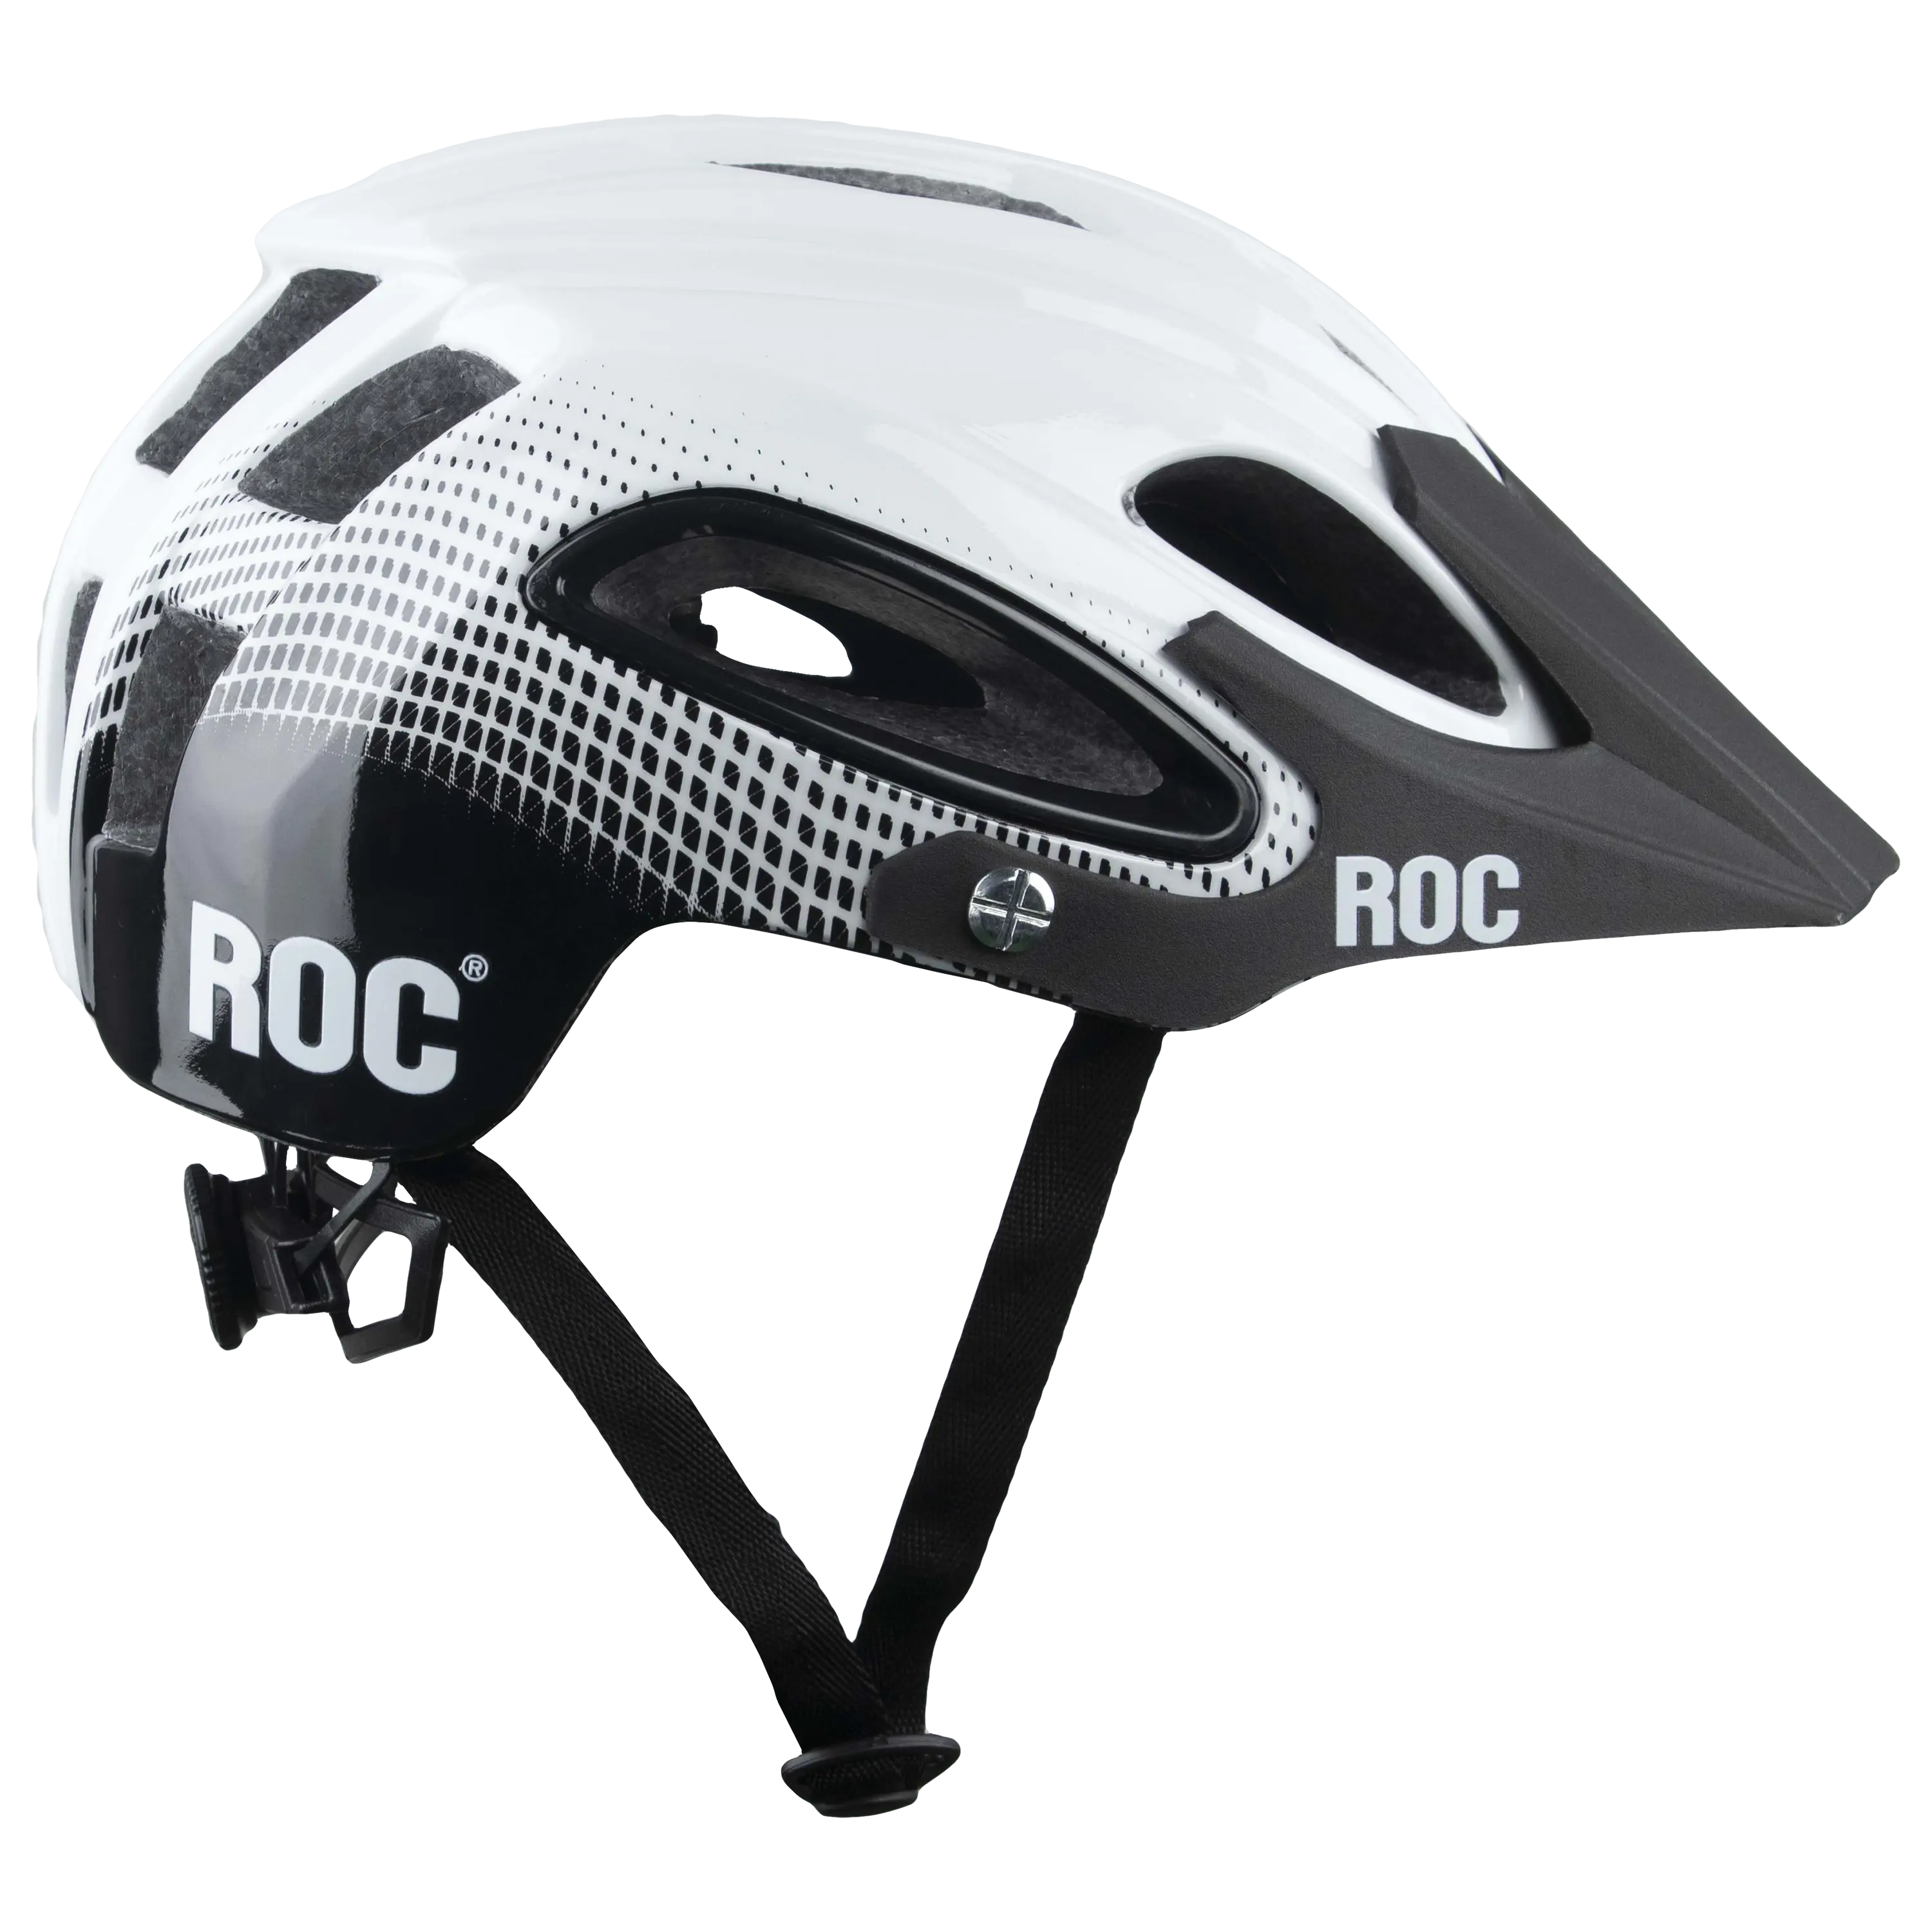 새로운 디자인 자전거 헬멧 R15 ROC 베트남산 고품질 모던 경량 안전 해외시장